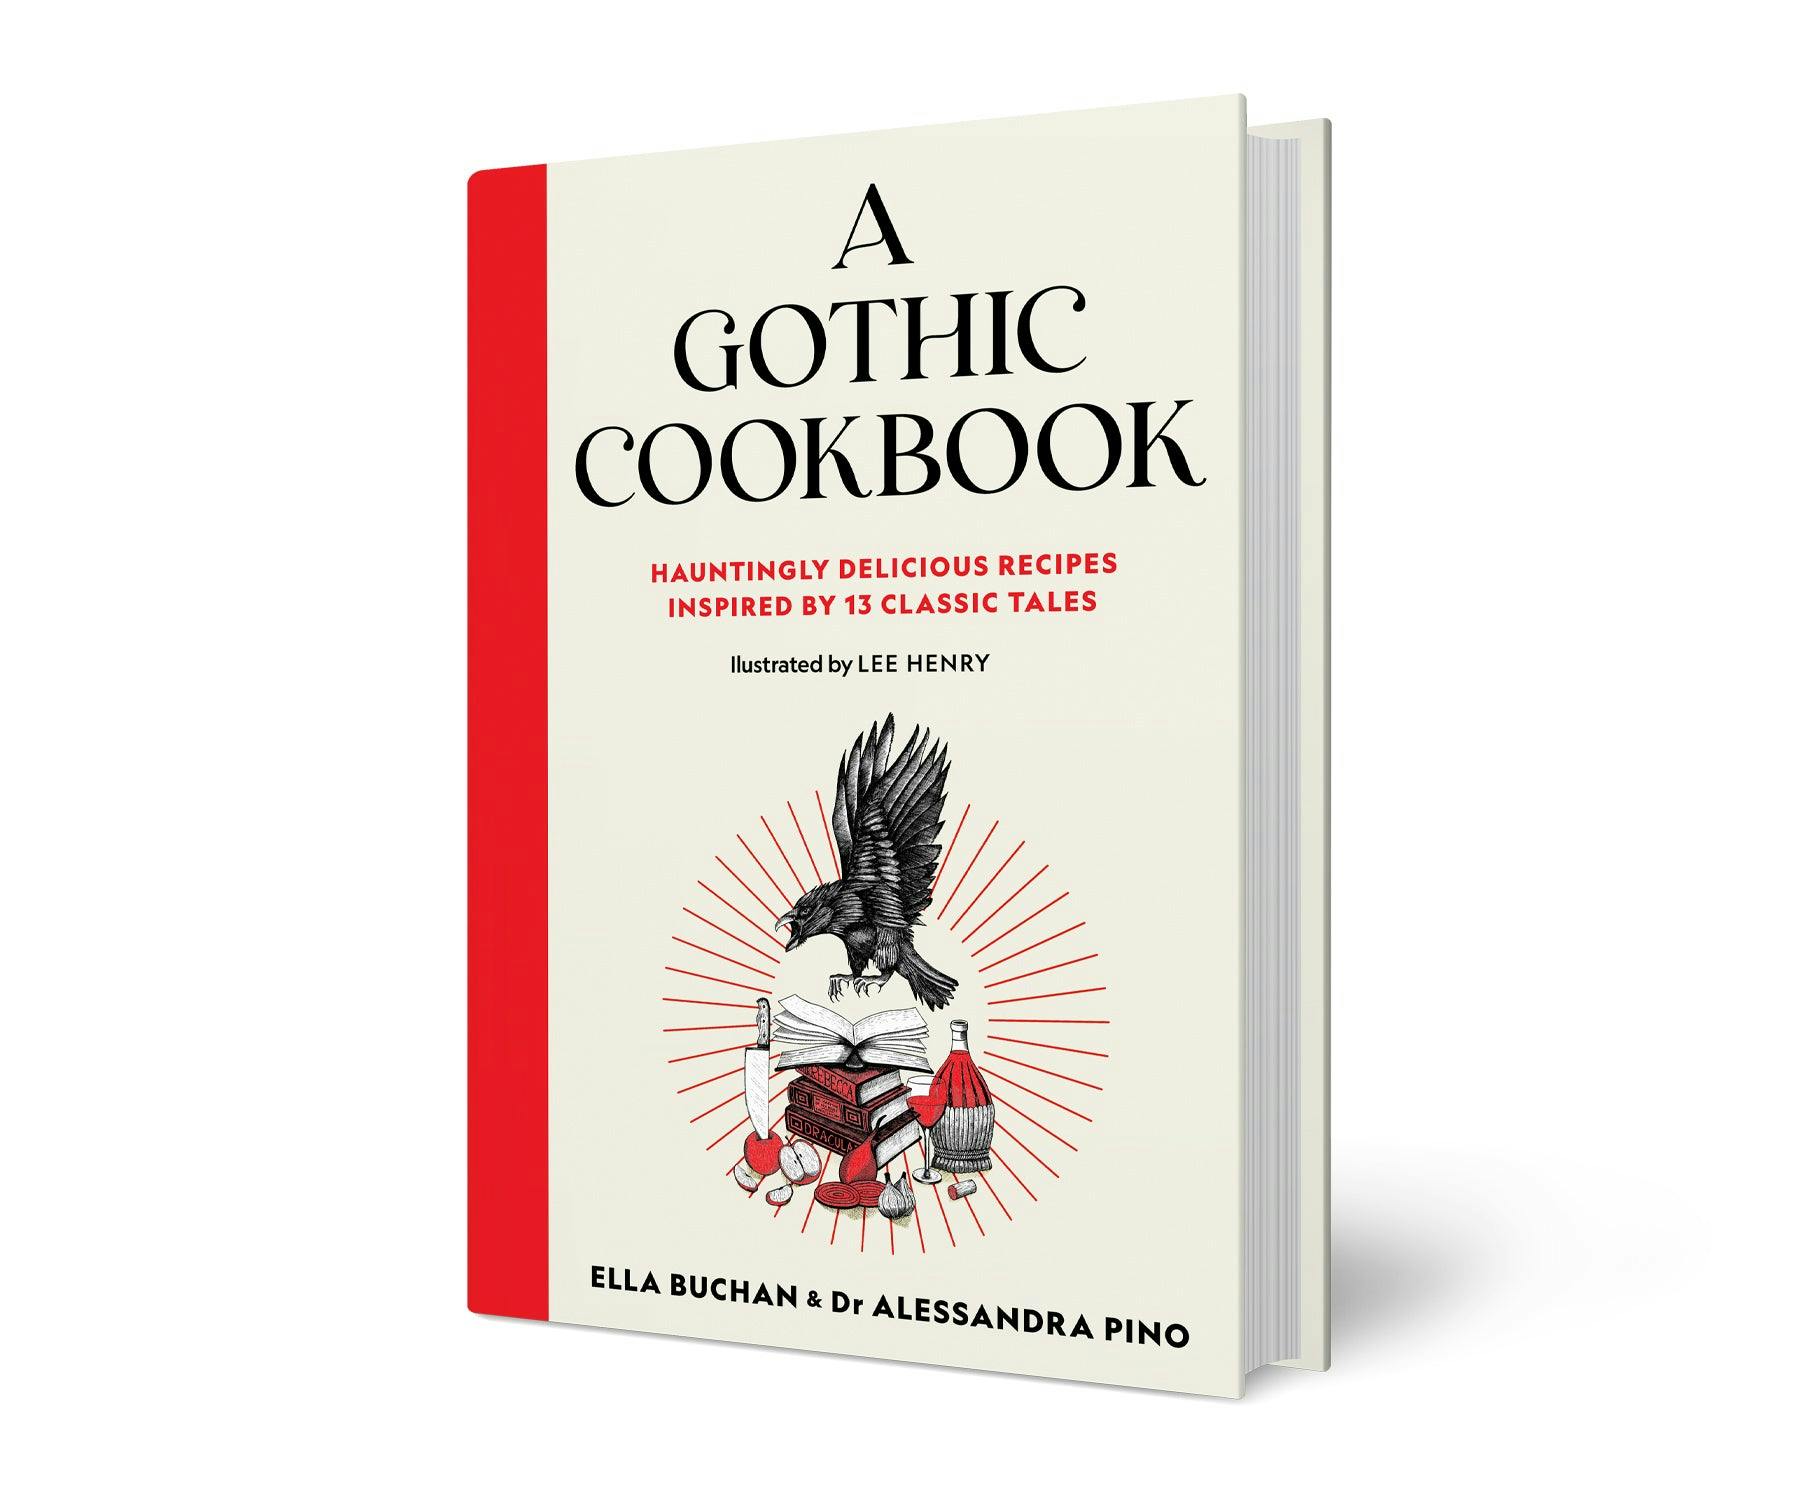 A Gothic Cookbook